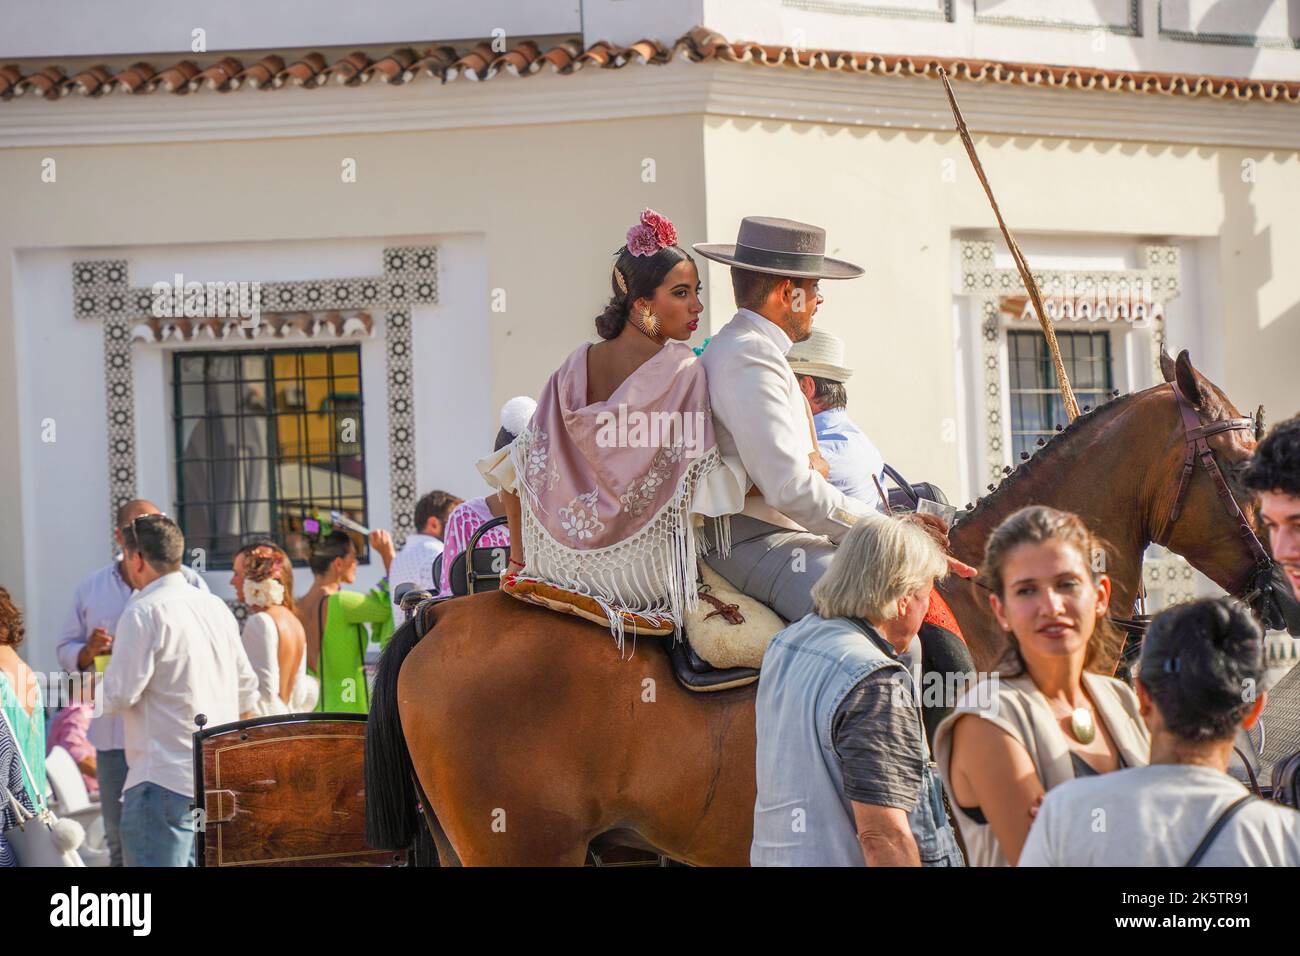 Spanischer Reiter in einer Bar, mit einer jungen Frau auf dem Rücken, während der jährlichen Messe Feria. Fuengirola, Andalusien. Stockfoto